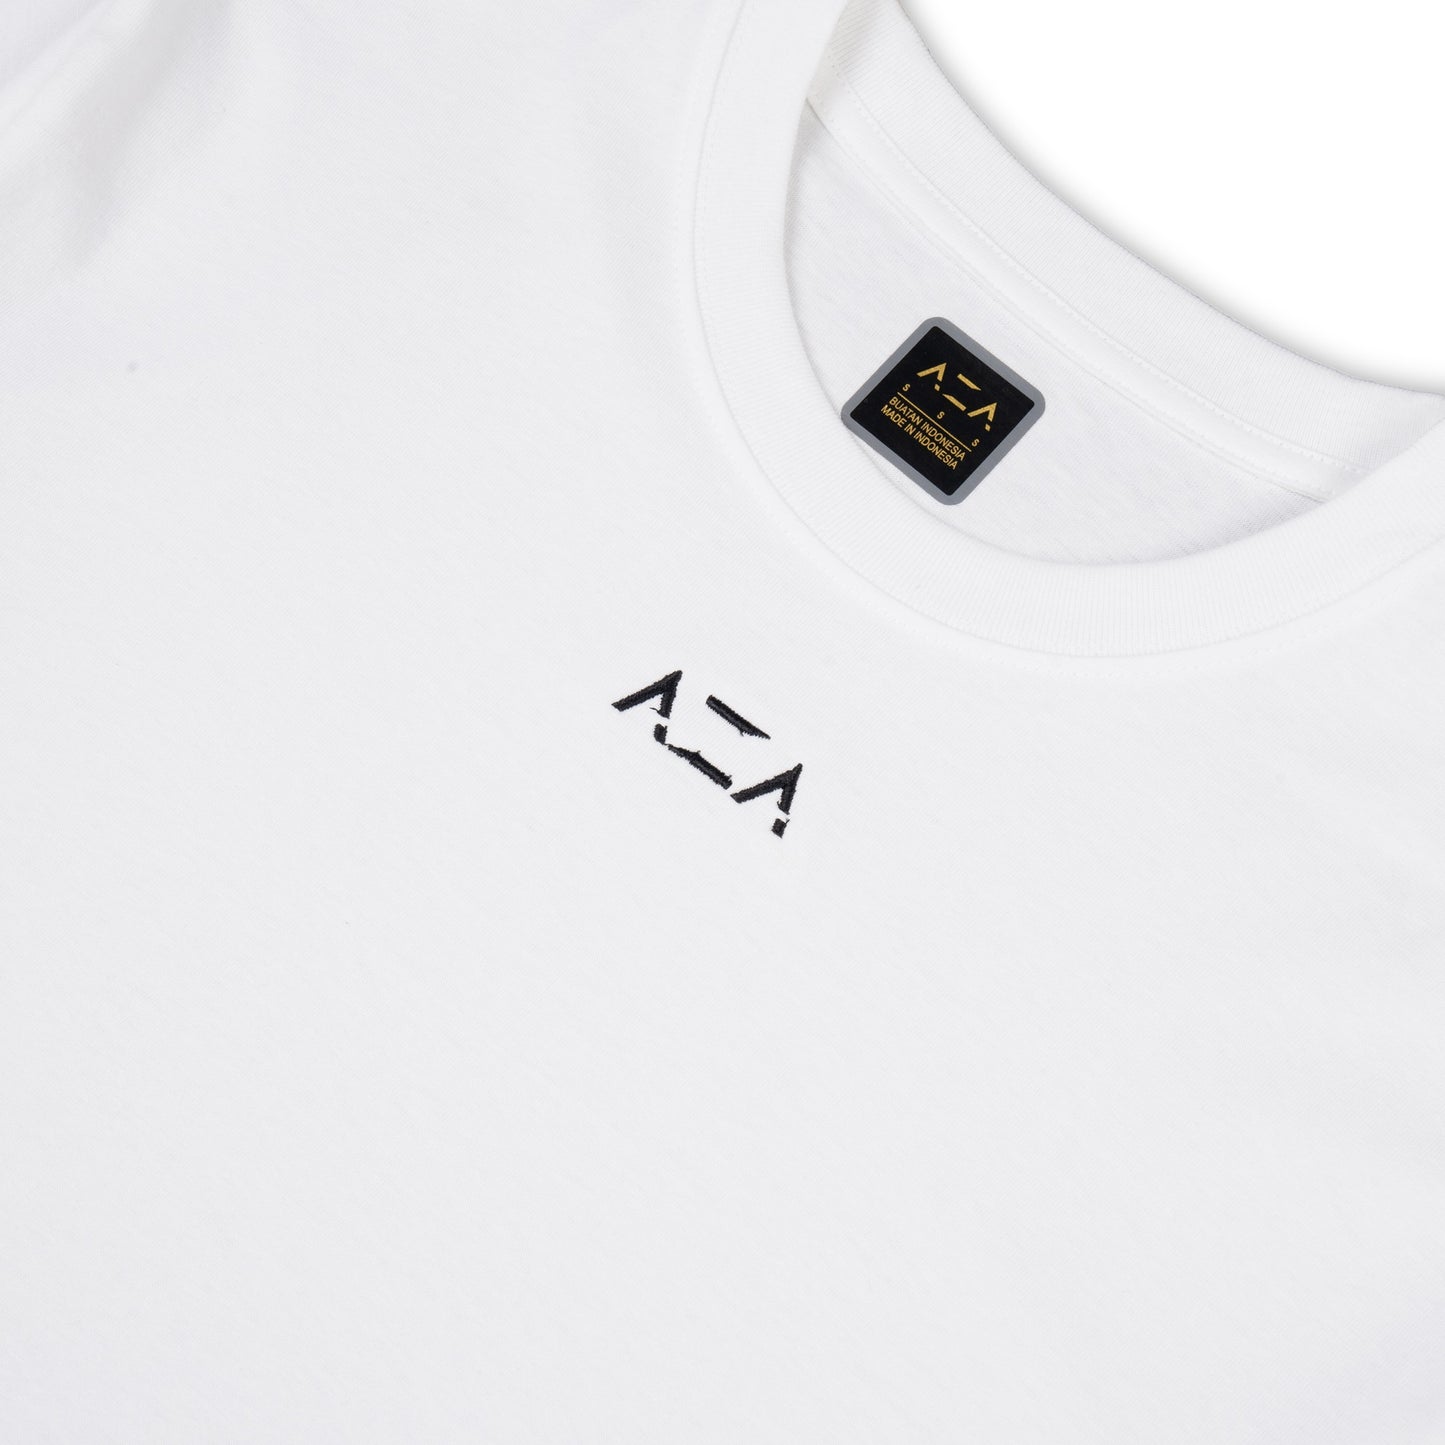 AZA T-Shirt Oversized Basic Edition - White